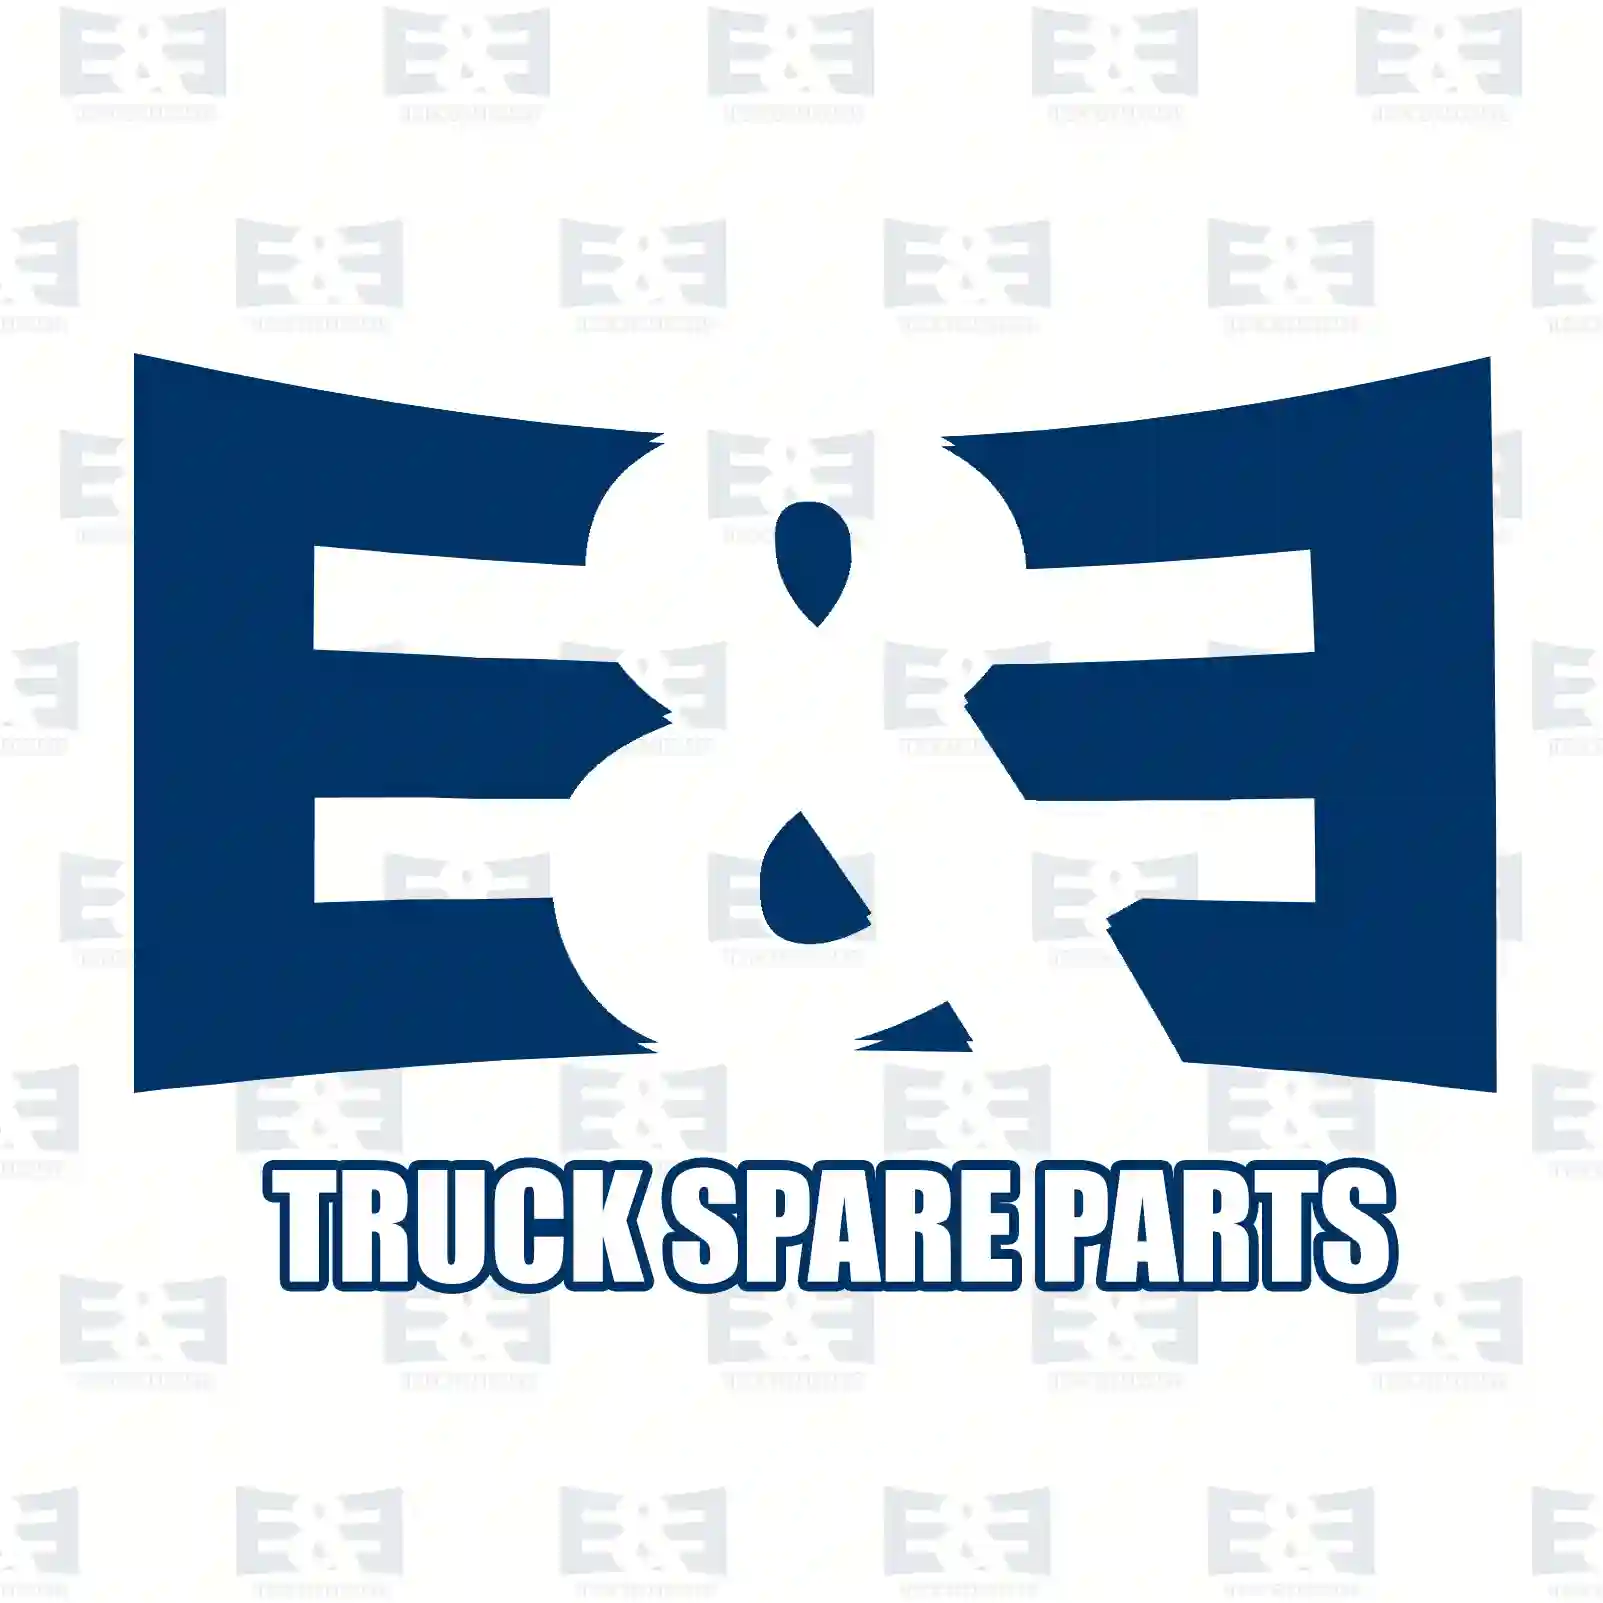 Exhaust brake, complete, 2E2208151, 1212830 ||  2E2208151 E&E Truck Spare Parts | Truck Spare Parts, Auotomotive Spare Parts Exhaust brake, complete, 2E2208151, 1212830 ||  2E2208151 E&E Truck Spare Parts | Truck Spare Parts, Auotomotive Spare Parts